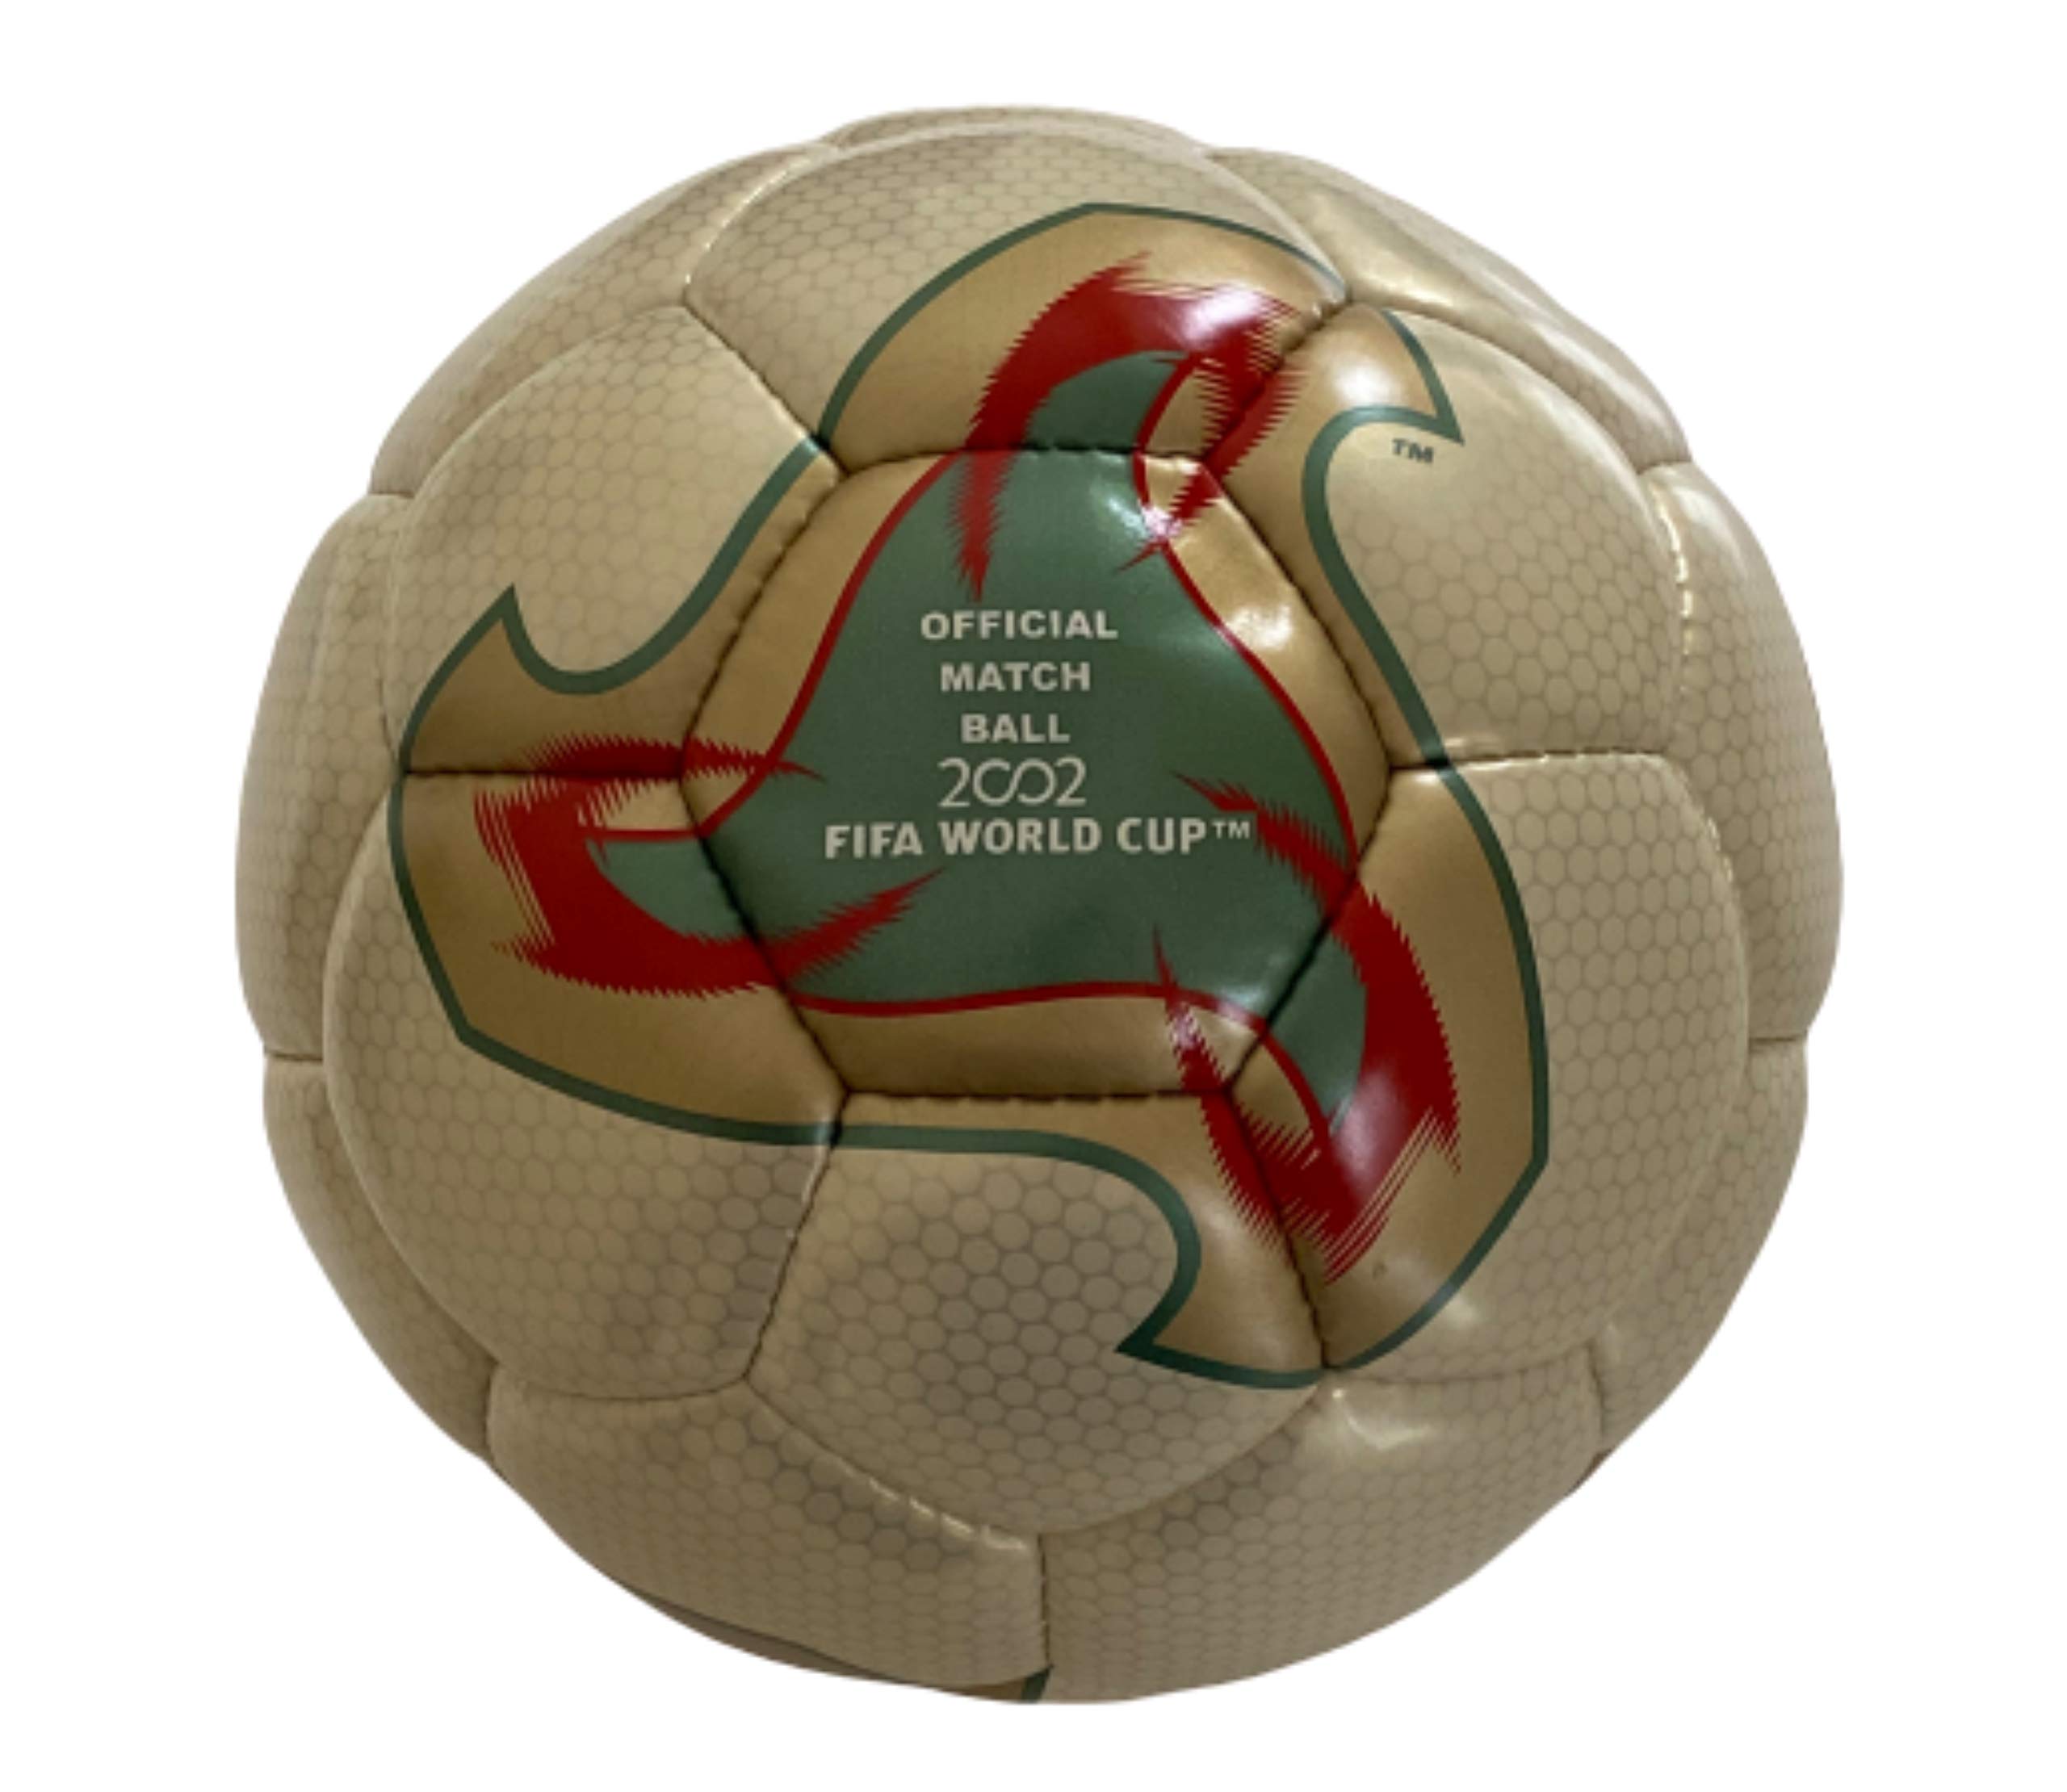 world cup match balls 2002 fevernova